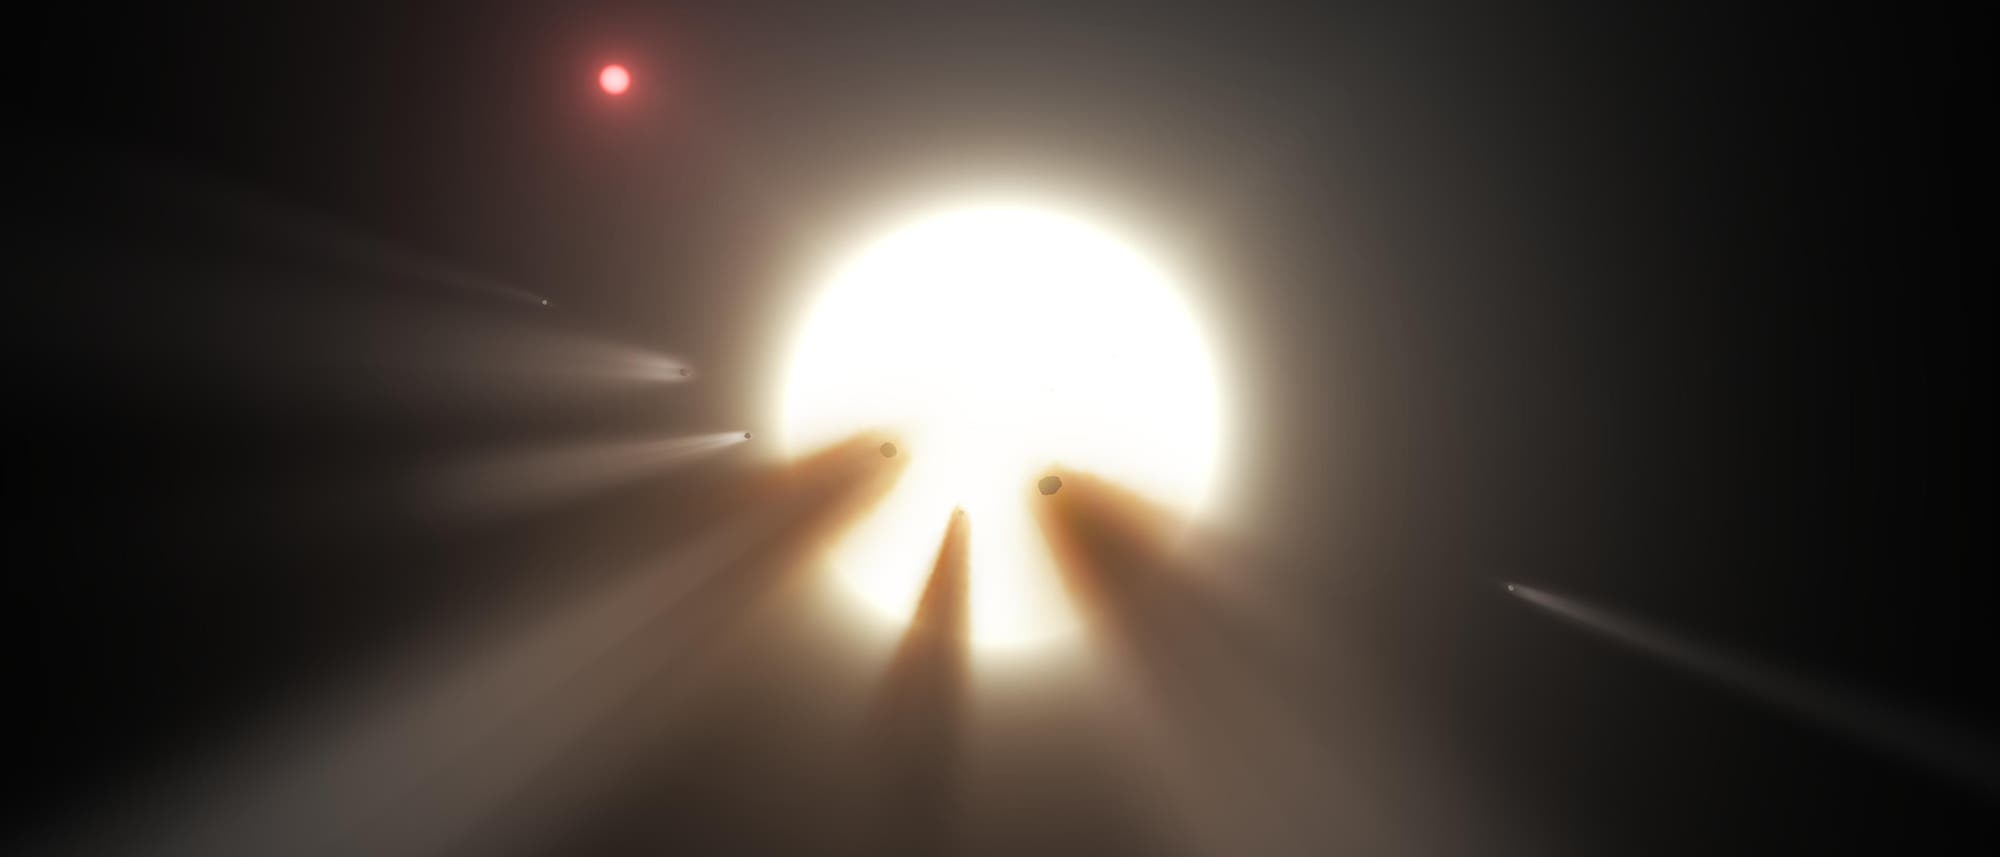 Kometen und andere Himmelskörper können einen Stern kurzzeitig verdunkeln, wie in dieser künstlerischen Darstellung.